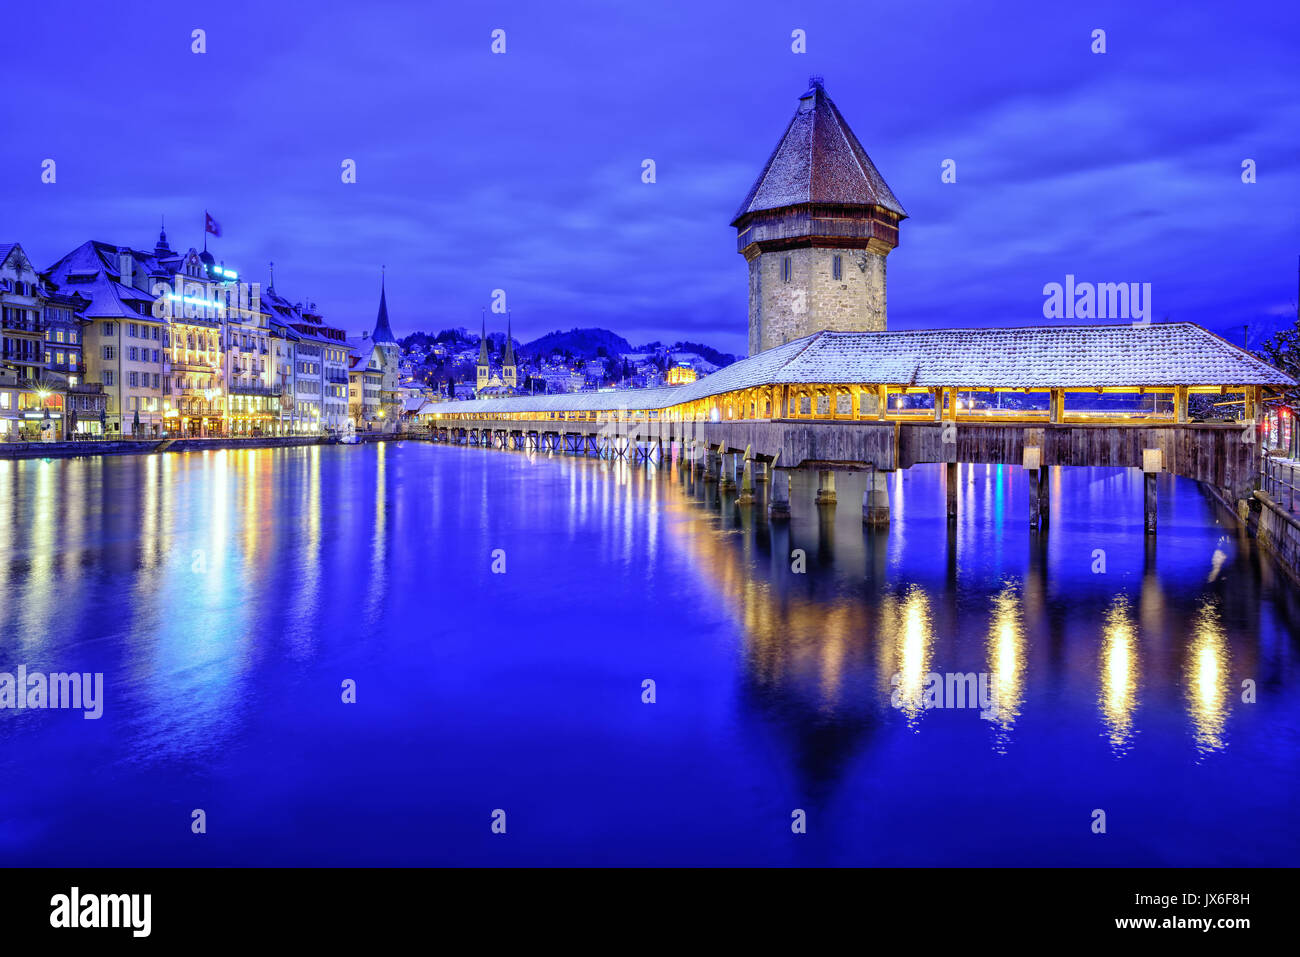 Altstadt von Luzern, Schweiz, mit hölzernen Kapellbrücke über die Reuss, der Wasserturm und der Promenade auf einem blauen winter Abend Stockfoto